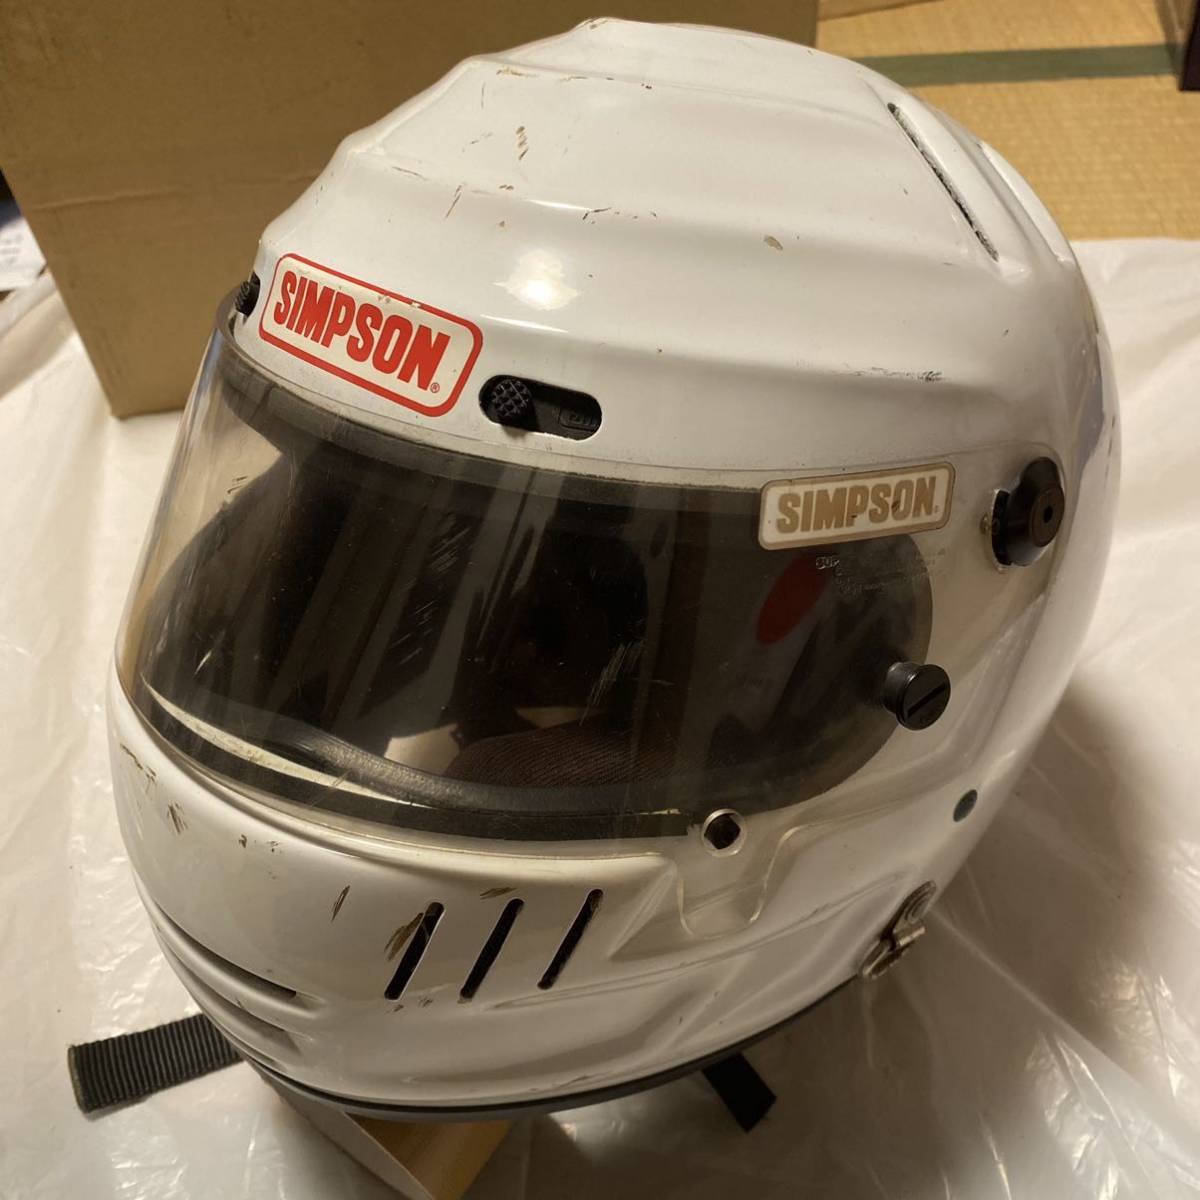  редкий подлинная вещь SIMPSON full-face шлем белый Simpson старый техосмотр "shaken" Shoei ARAI 4 колесо 2 колесо размер 60 L XL Vintage 